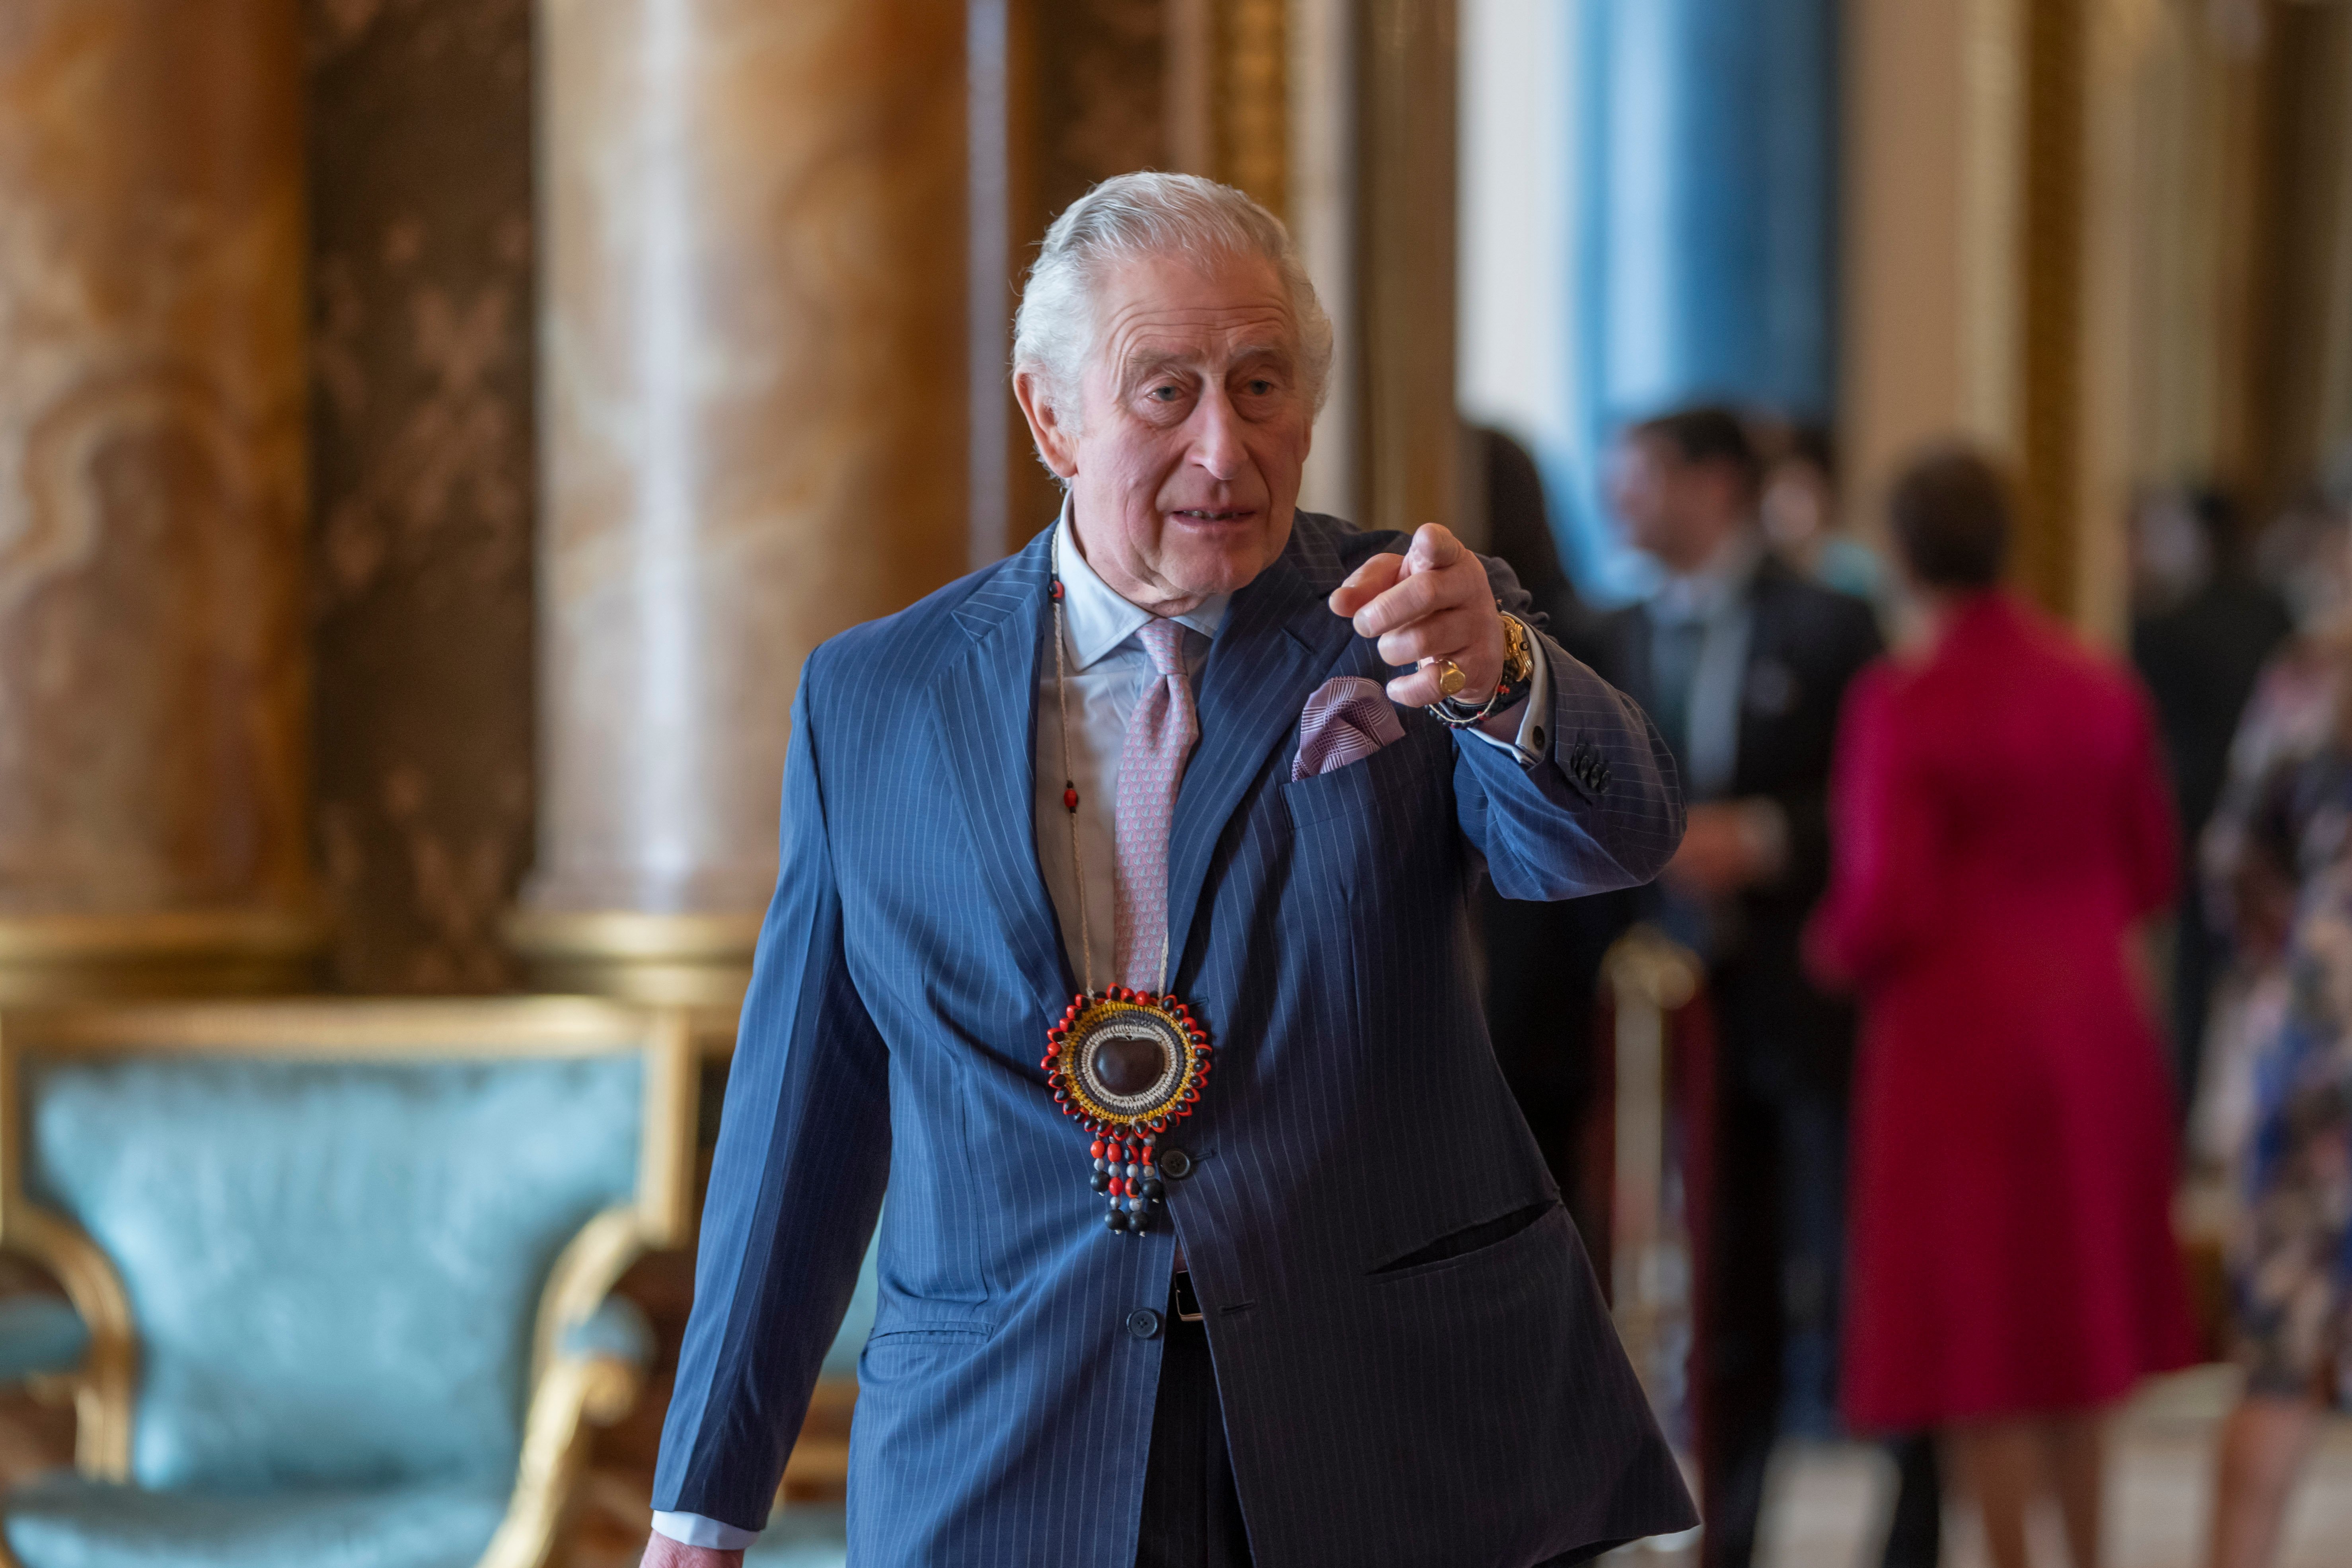 Invitació tornada a Carles III, 2 VIPS declinen estar en la coronació: gràcies, però no